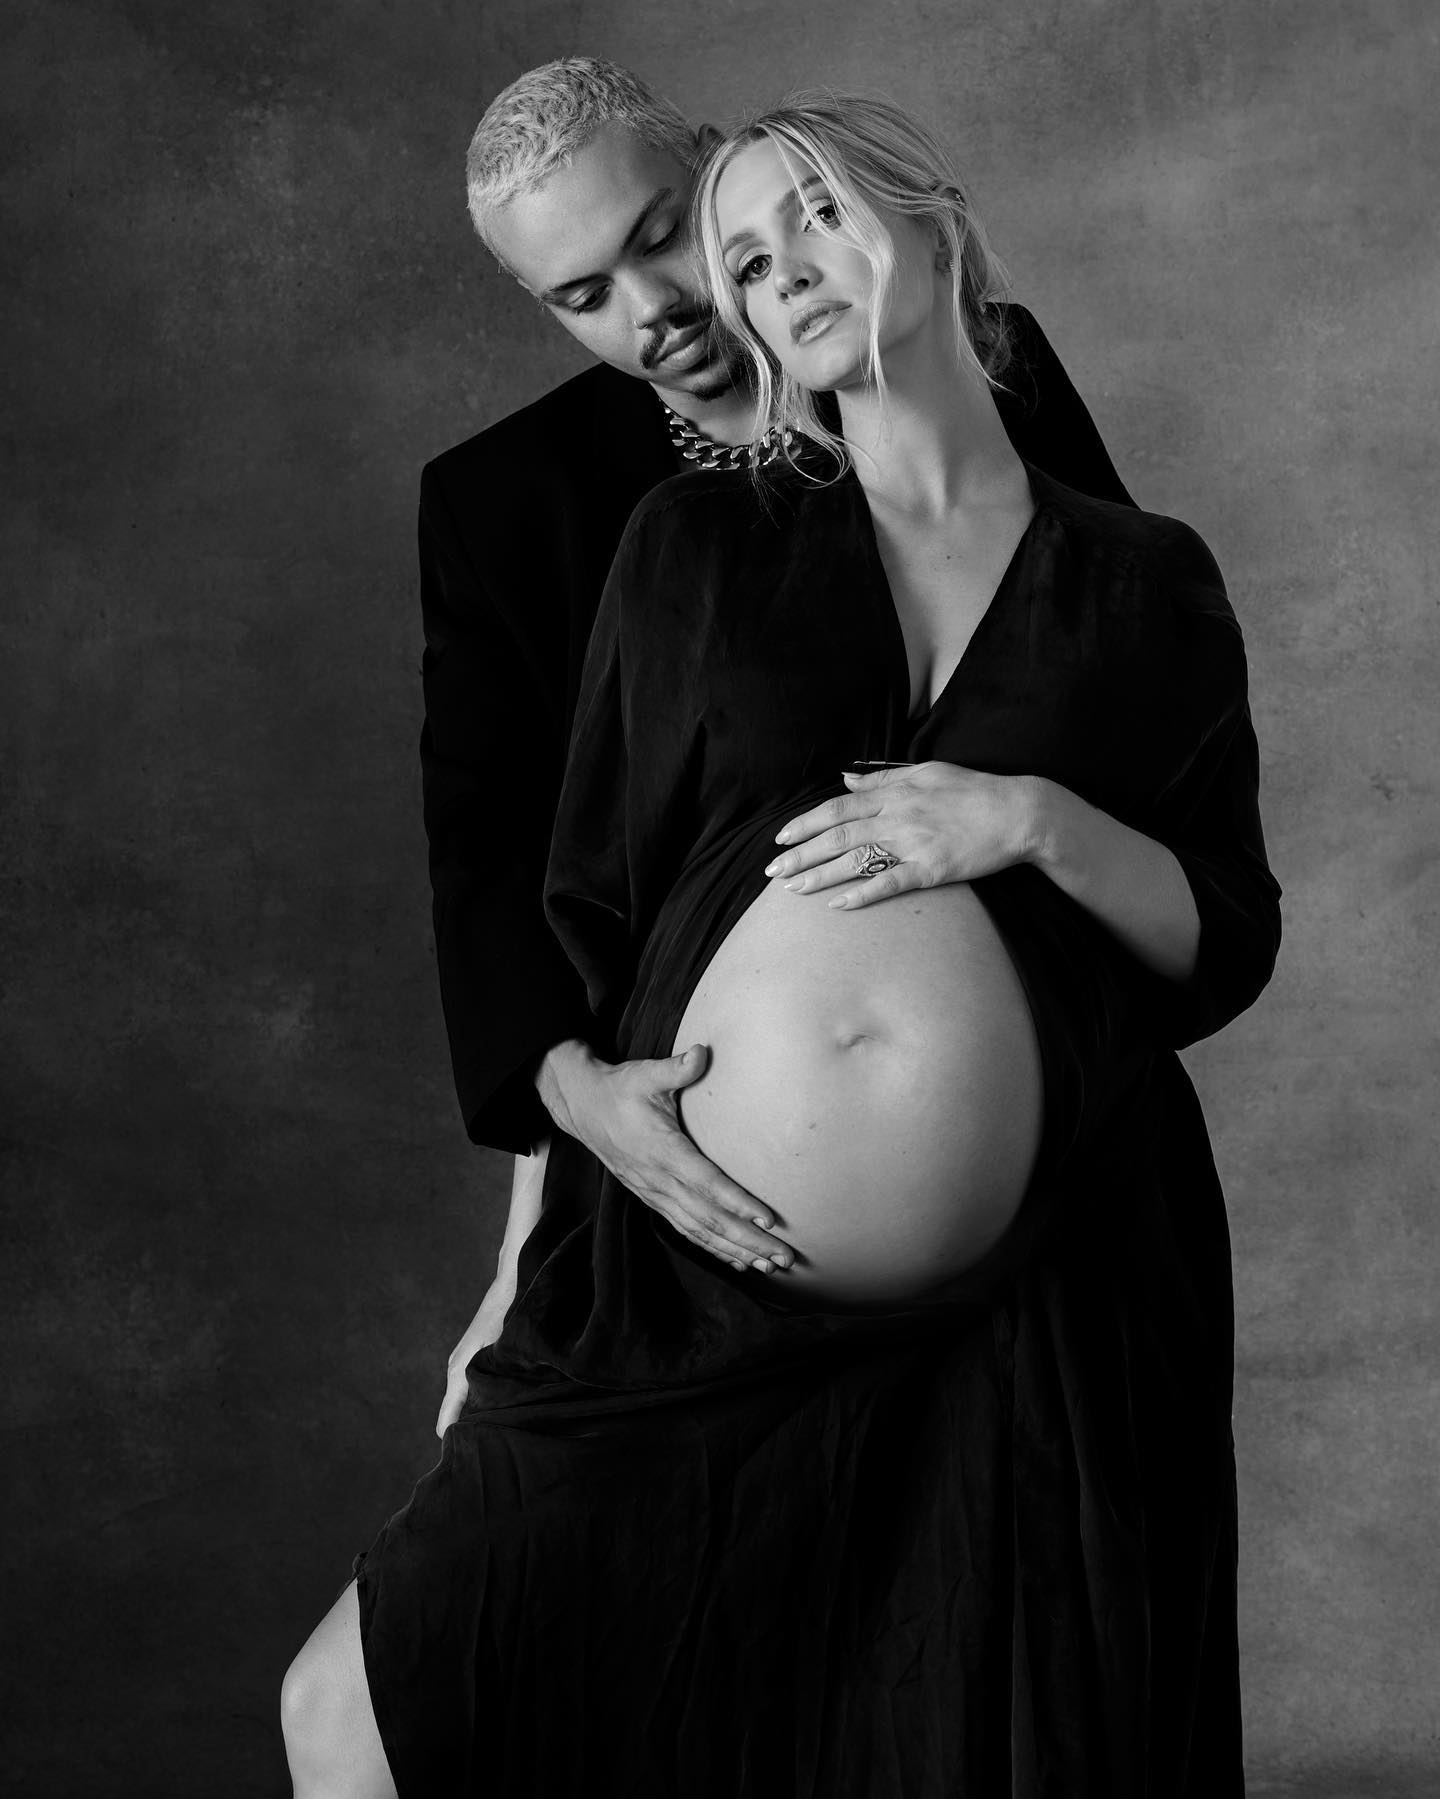 Ashlee Simpson Ross Maternity Photoshoot! - Photo 3